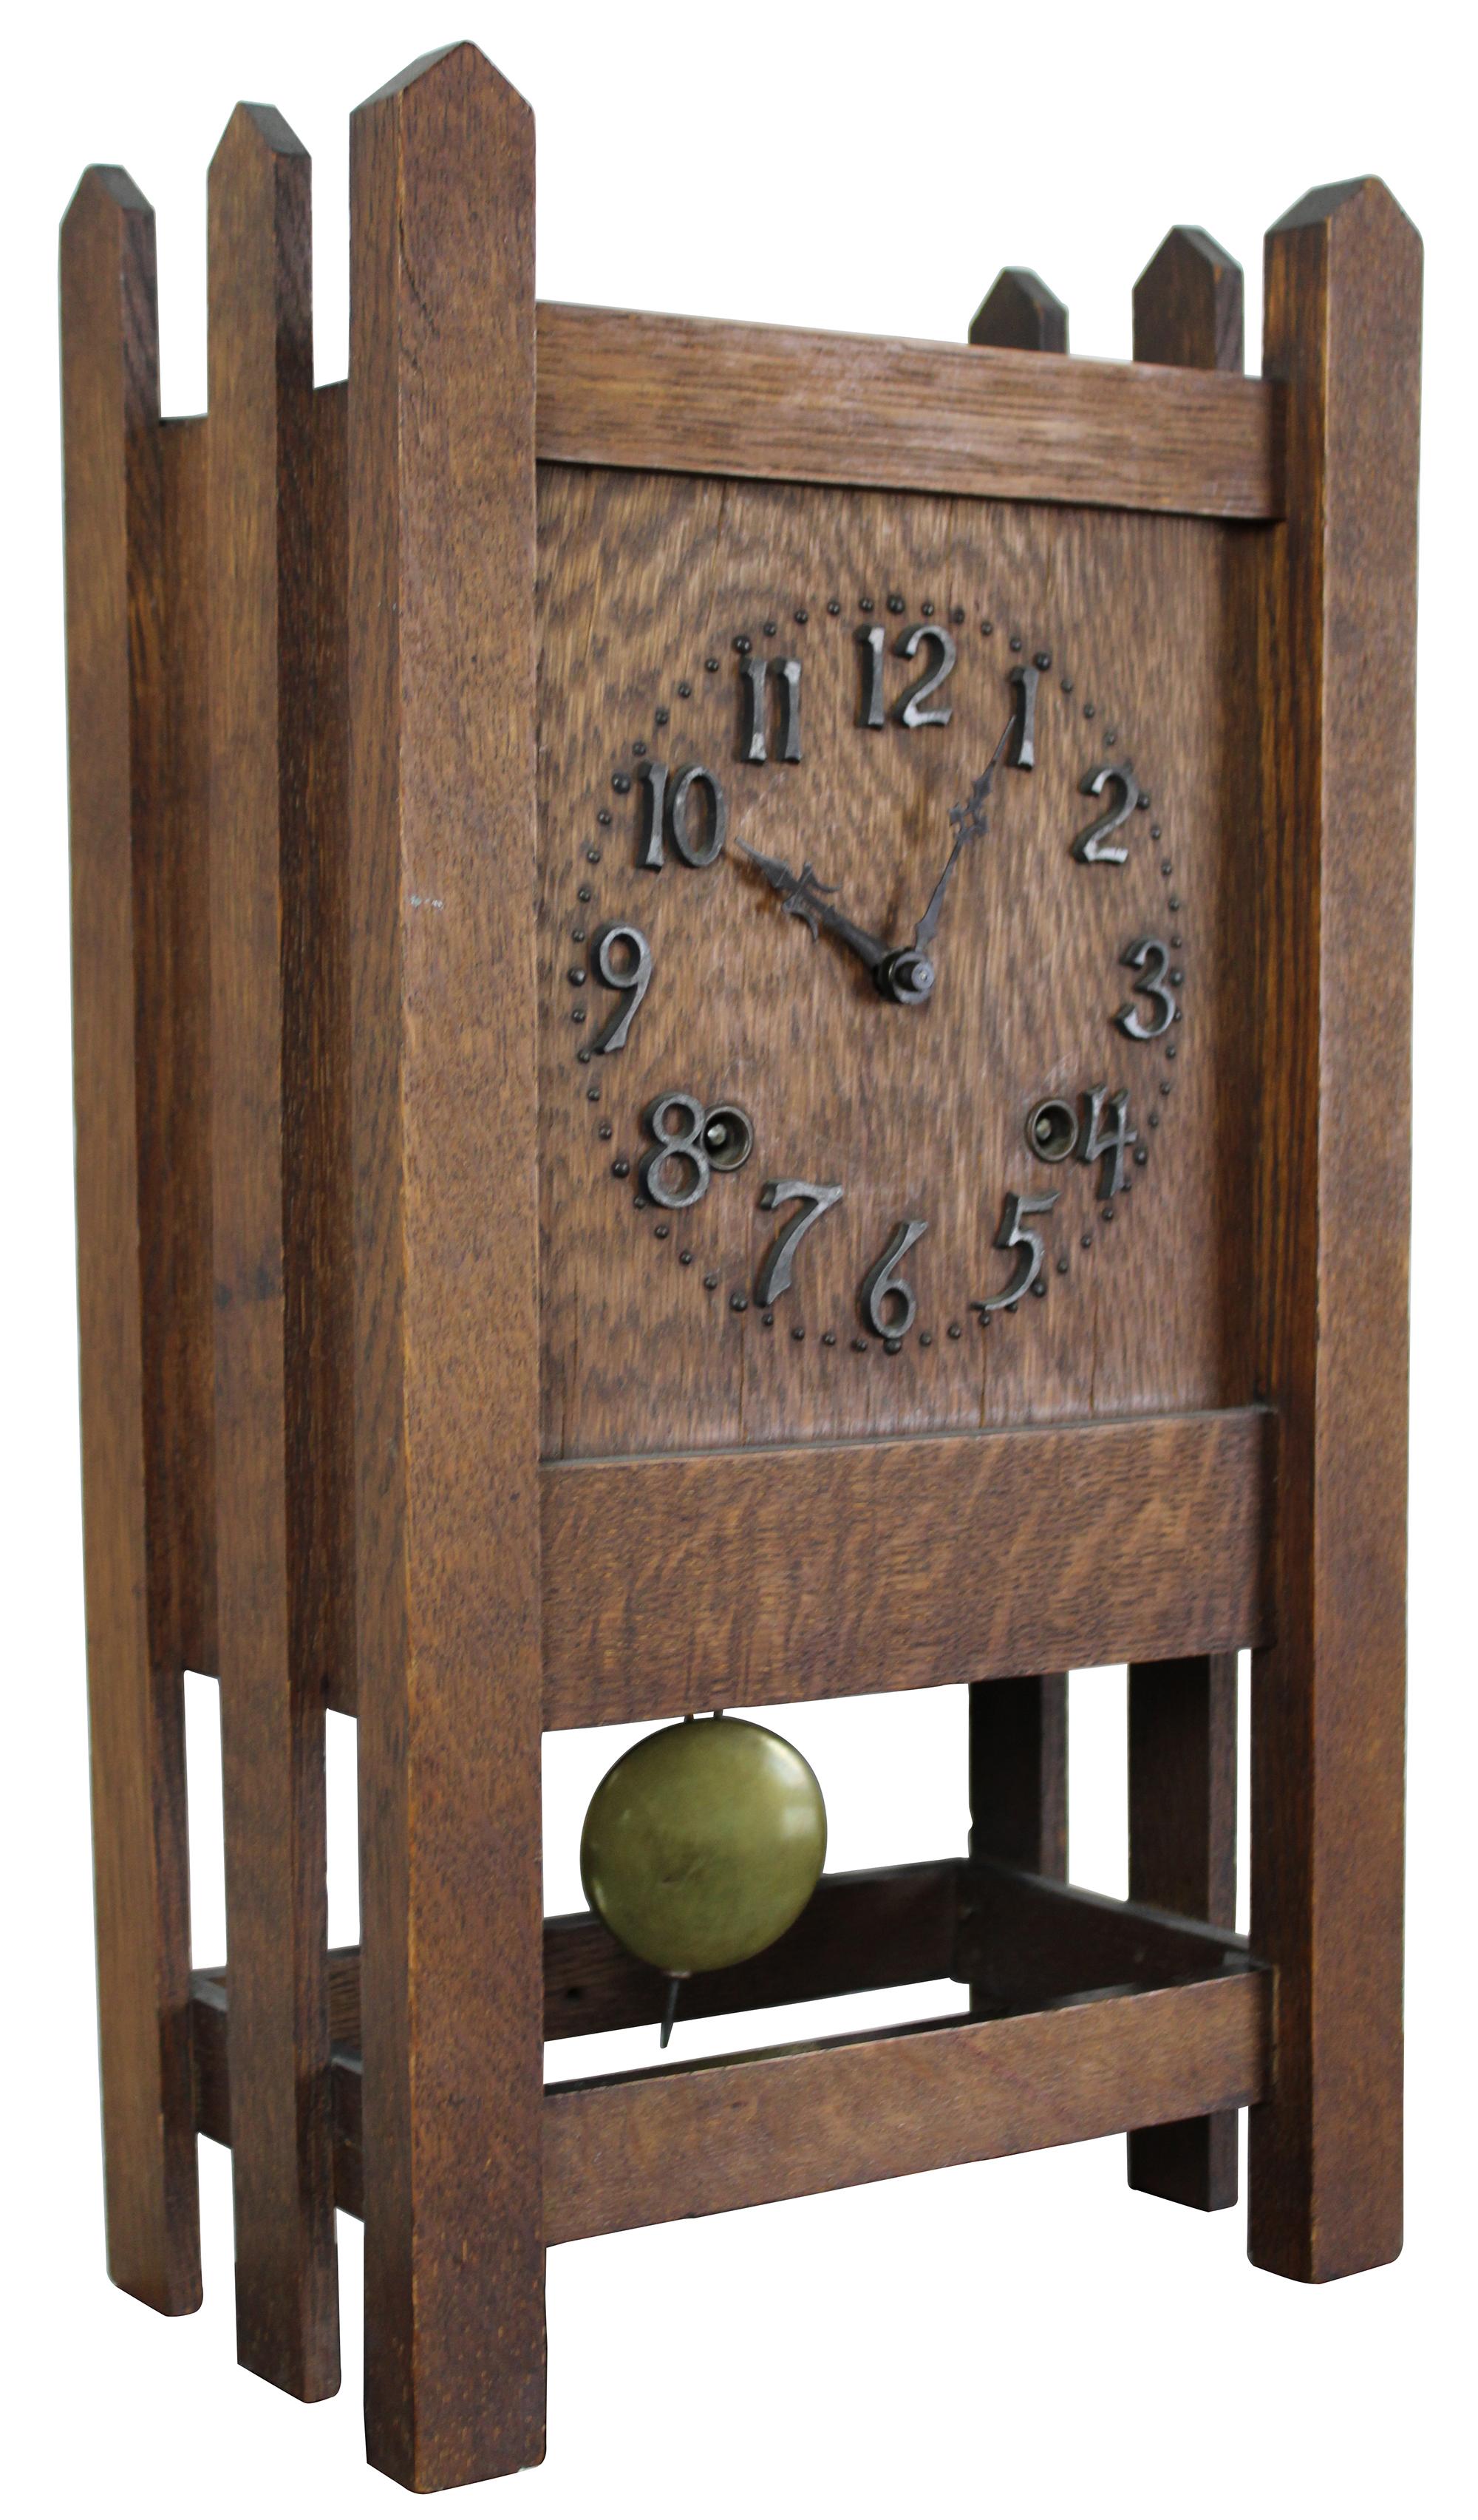 Une belle horloge 8 jours de l'ère missionnaire par Session Clock Company de Forestville:: Connecticut. Fabriqué en chêne scié sur quartier:: avec des numéros montés en fer et un design unique de poteau de clôture. Mesure : 14